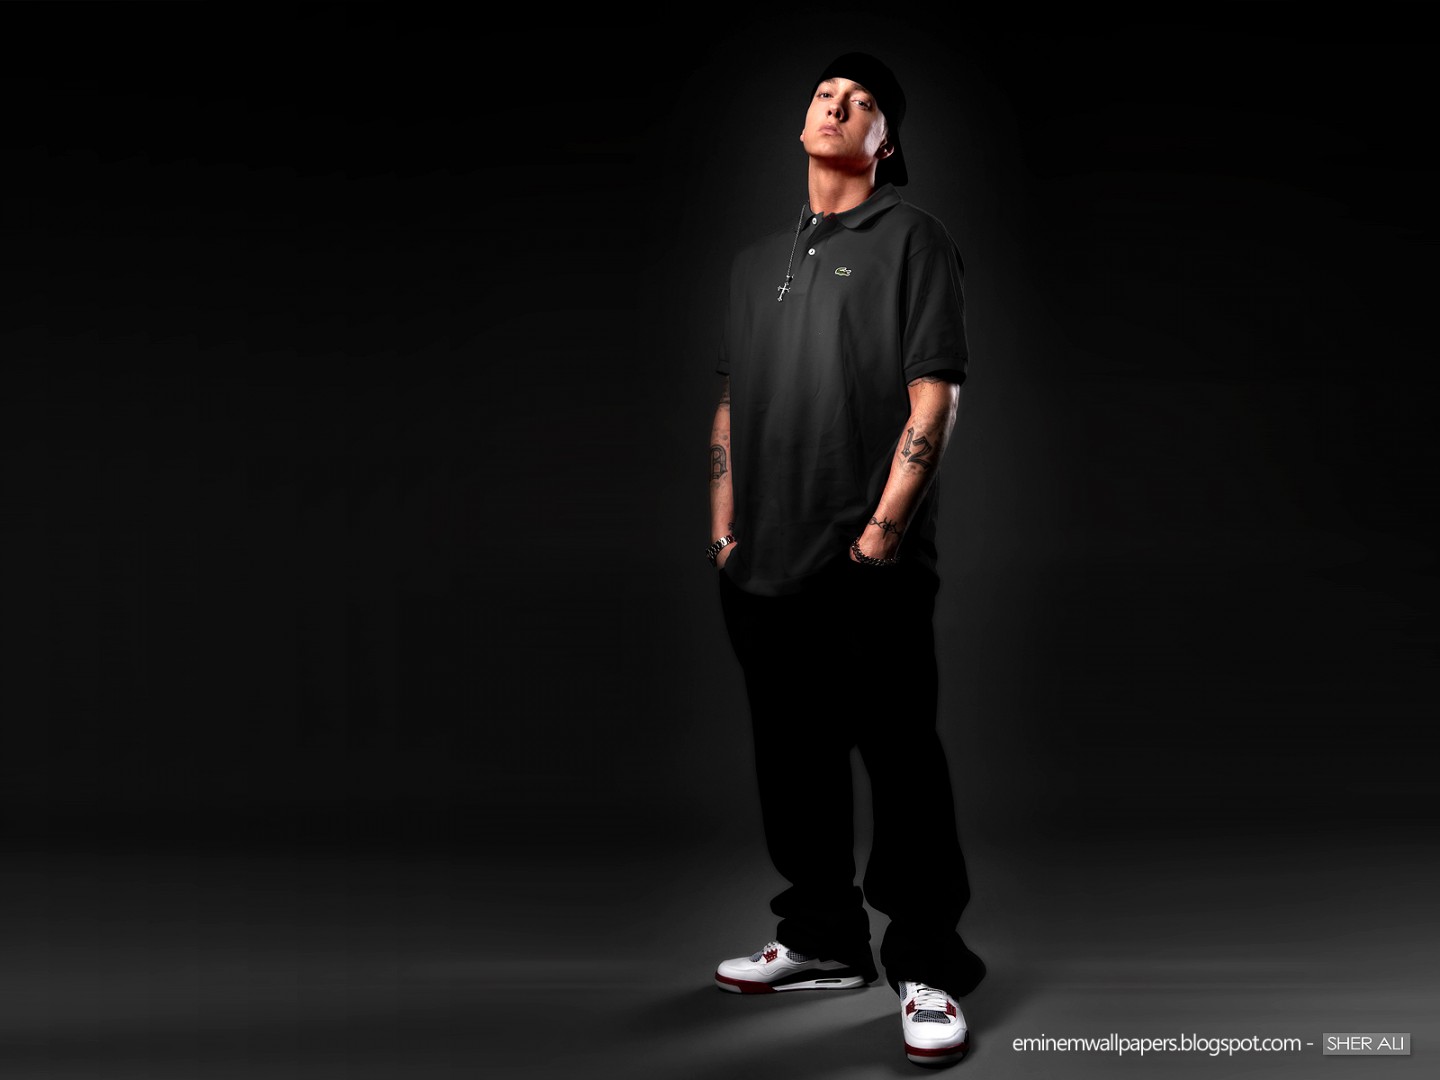 Eminem Wallpaper Jpg